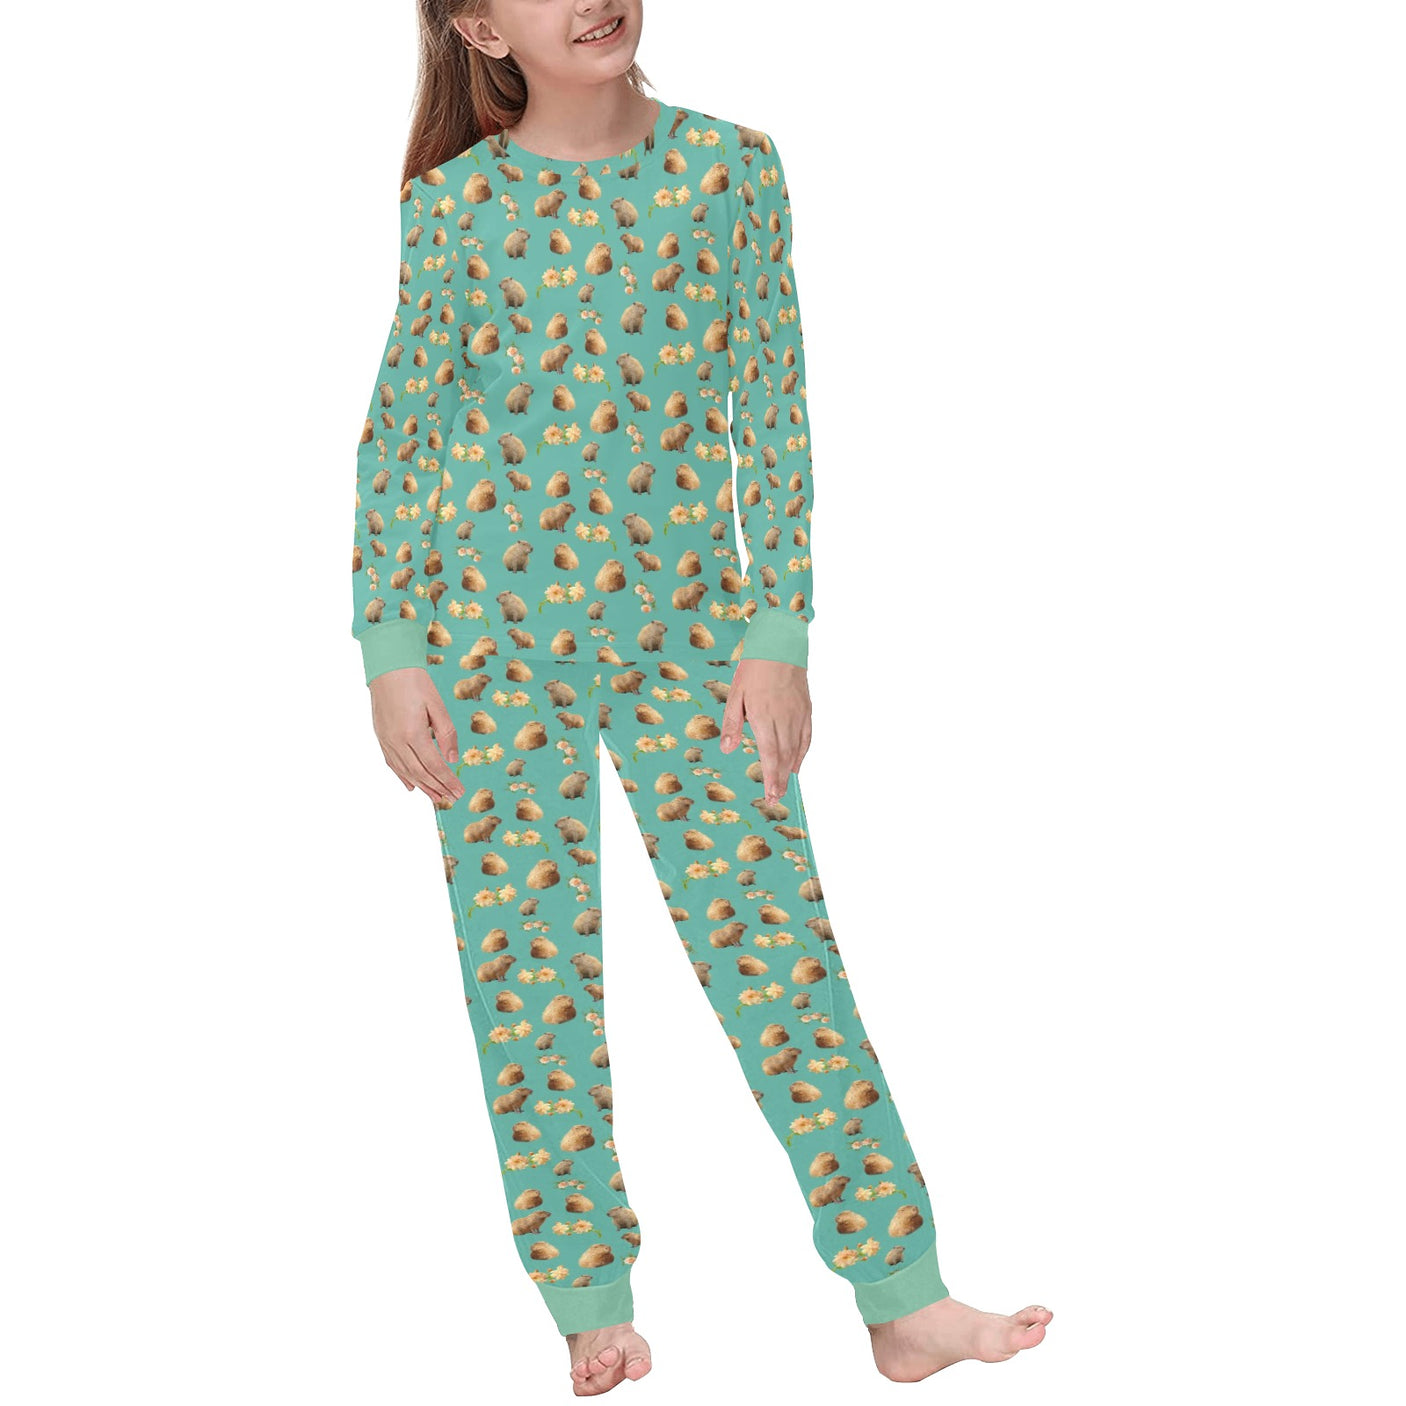 Capybara Pajamas for Kids